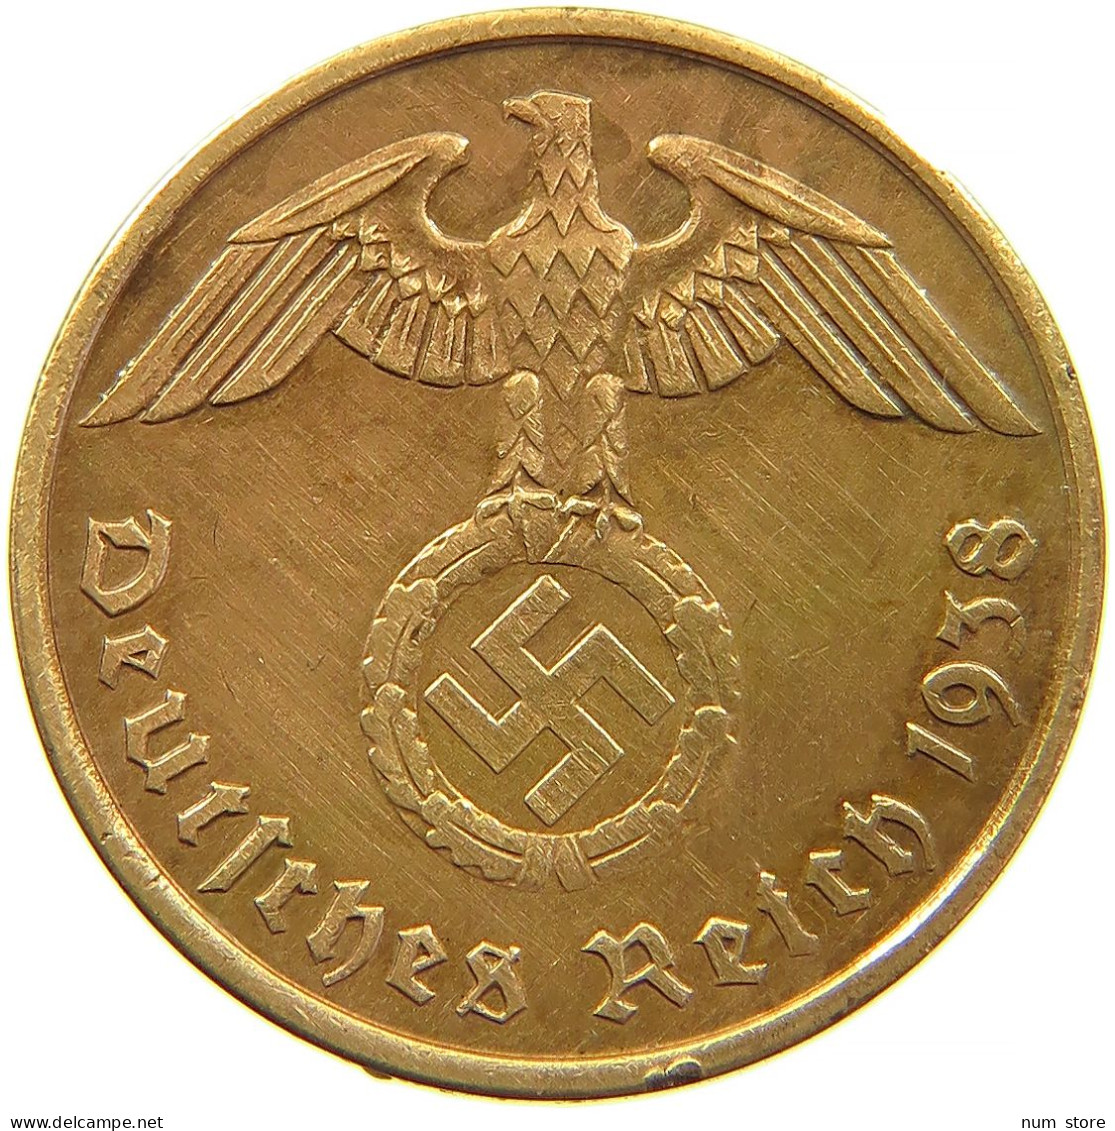 GERMANY 2 REICHSPFENNIG 1938 A #s095 0183 - 2 Reichspfennig